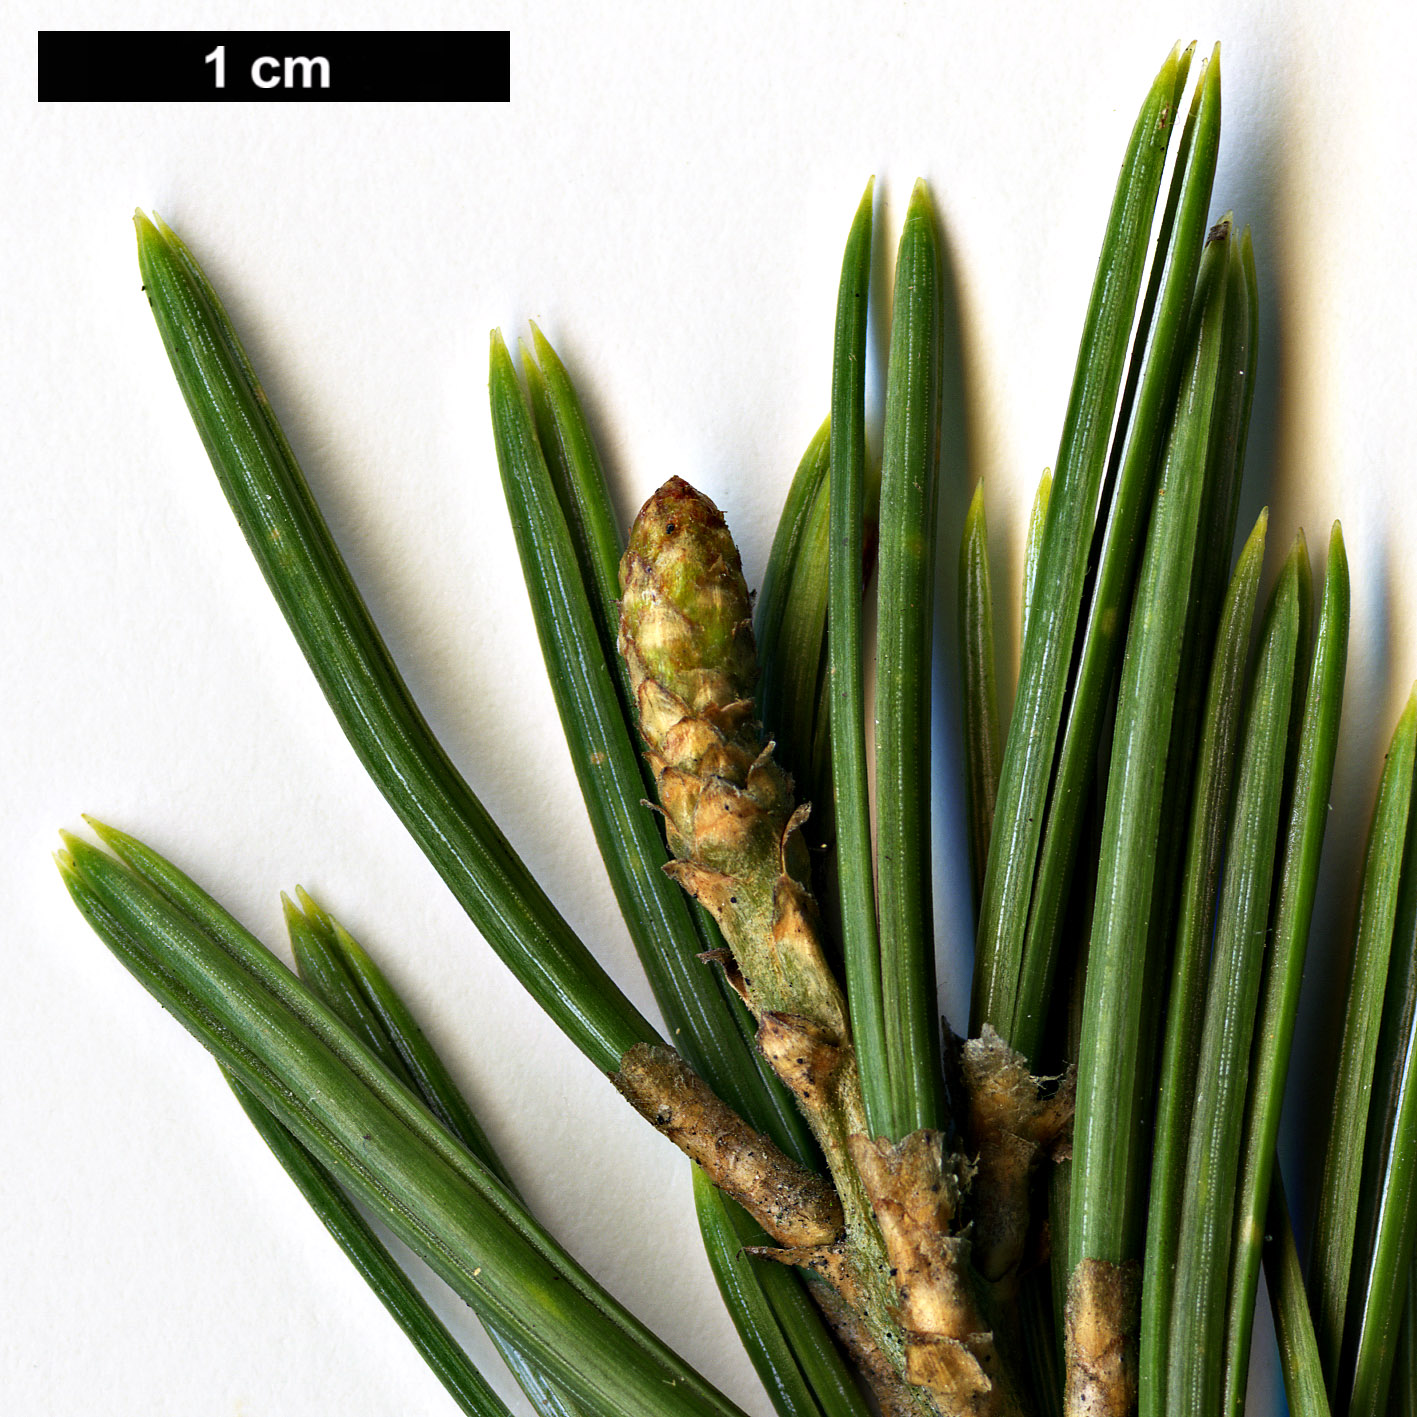 High resolution image: Family: Pinaceae - Genus: Pinus - Taxon: quadrifolia